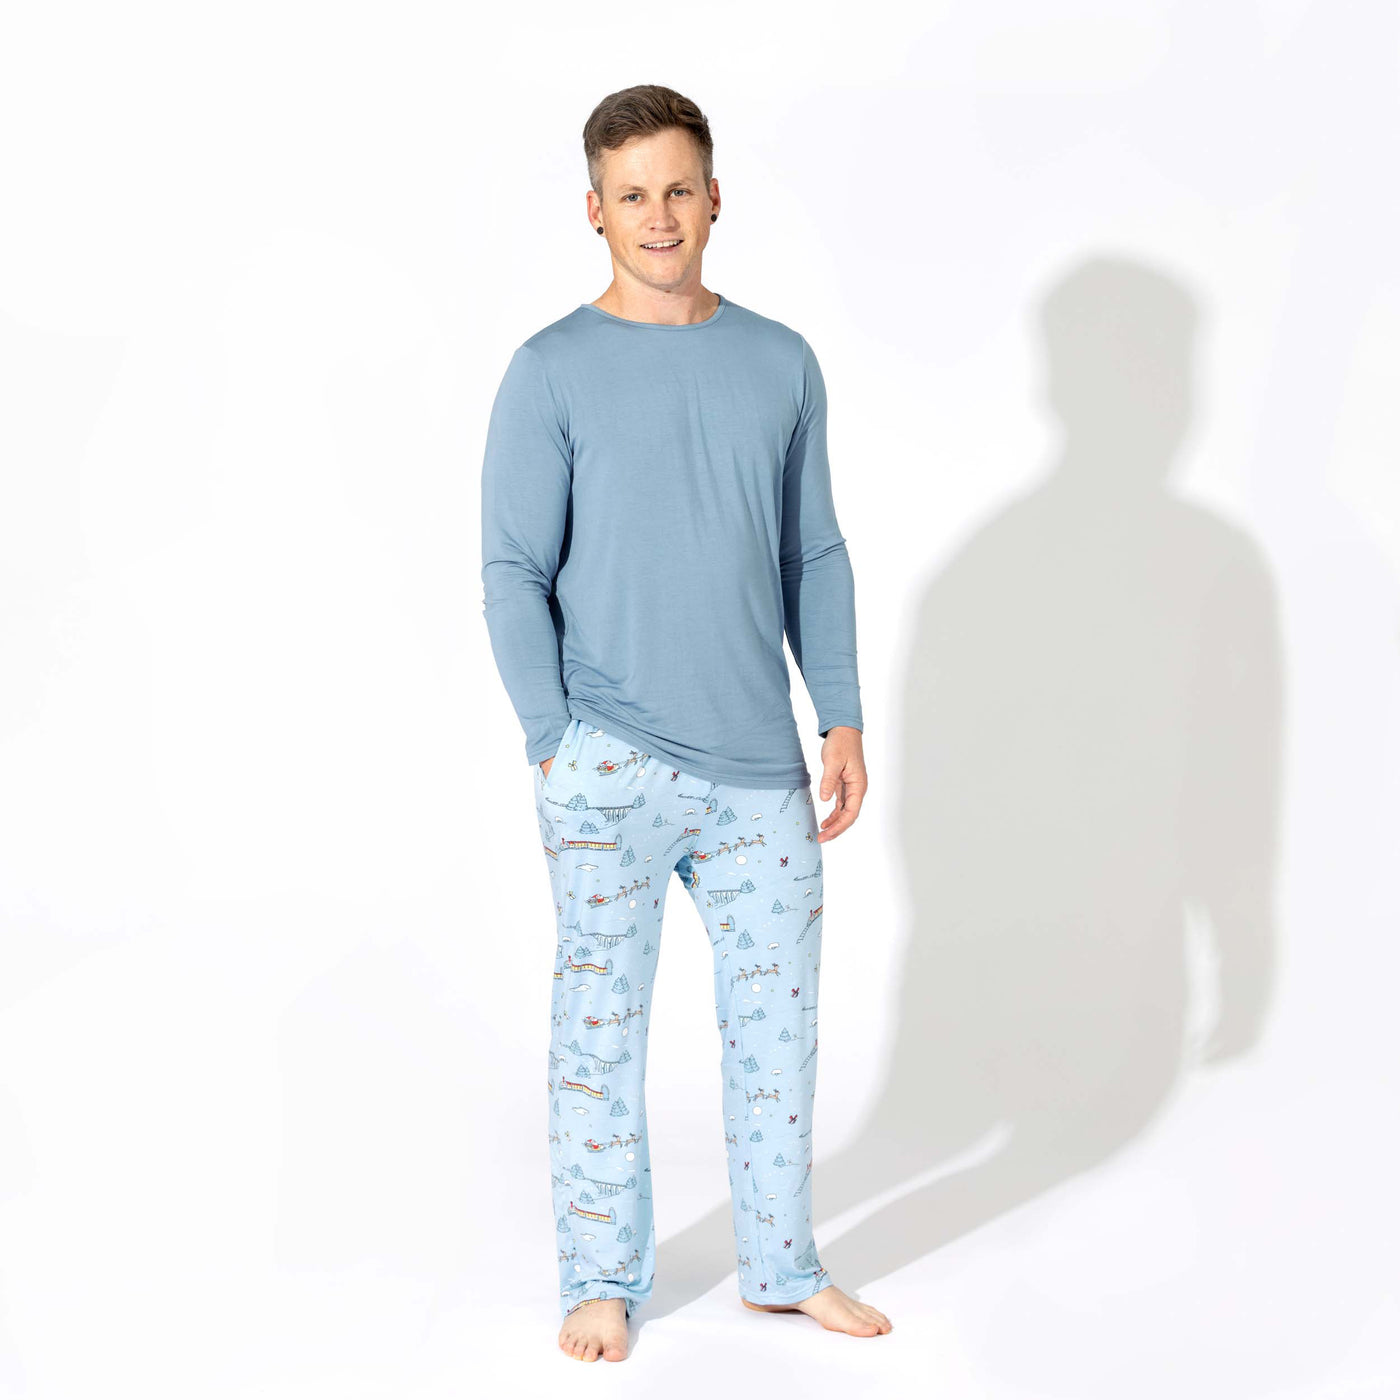 Polar Express Bamboo Men's Pajama Set